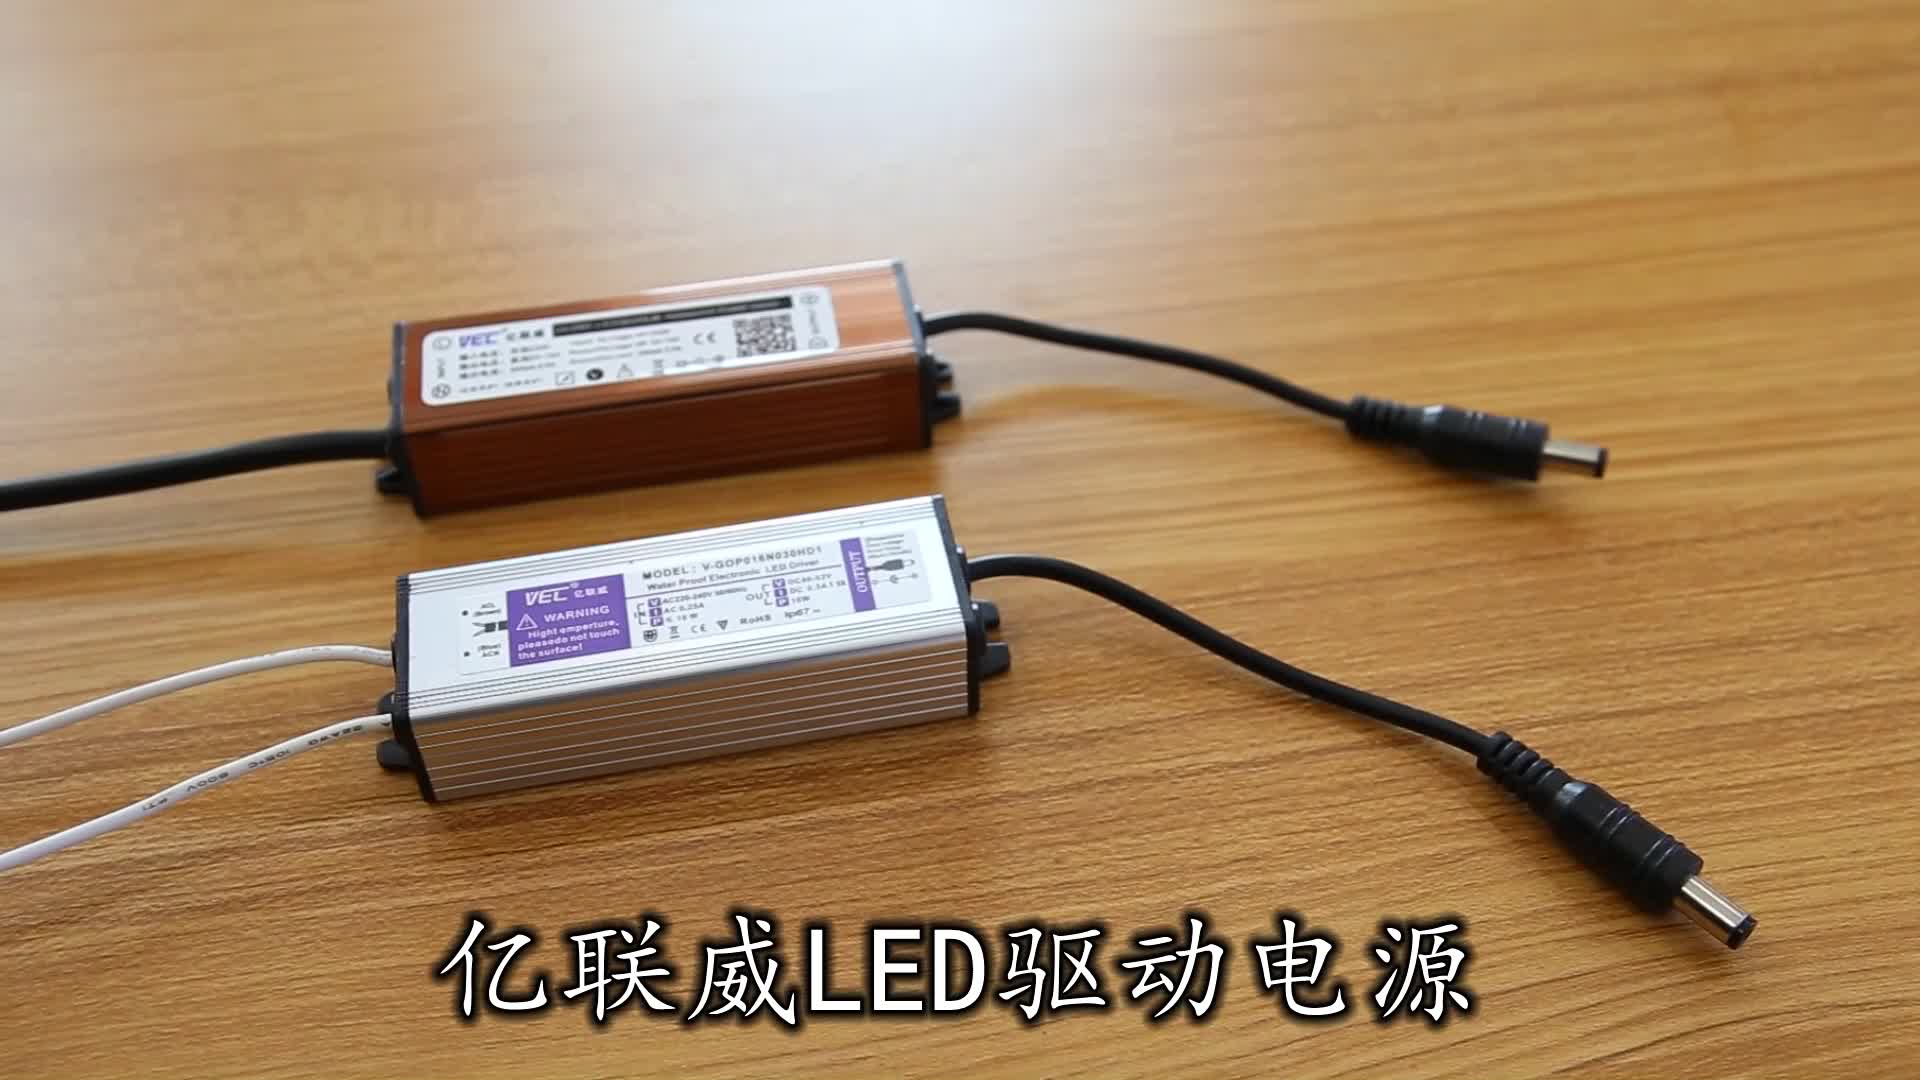 tăng phô đèn 1m2 VEC Yilianwei tích hợp đèn LED âm trần phẳng ổ điện chấn lưu dòng điện không đổi 8W12W16W38W48W tăng phô đèn led tăng phô đèn led Chấn lưu